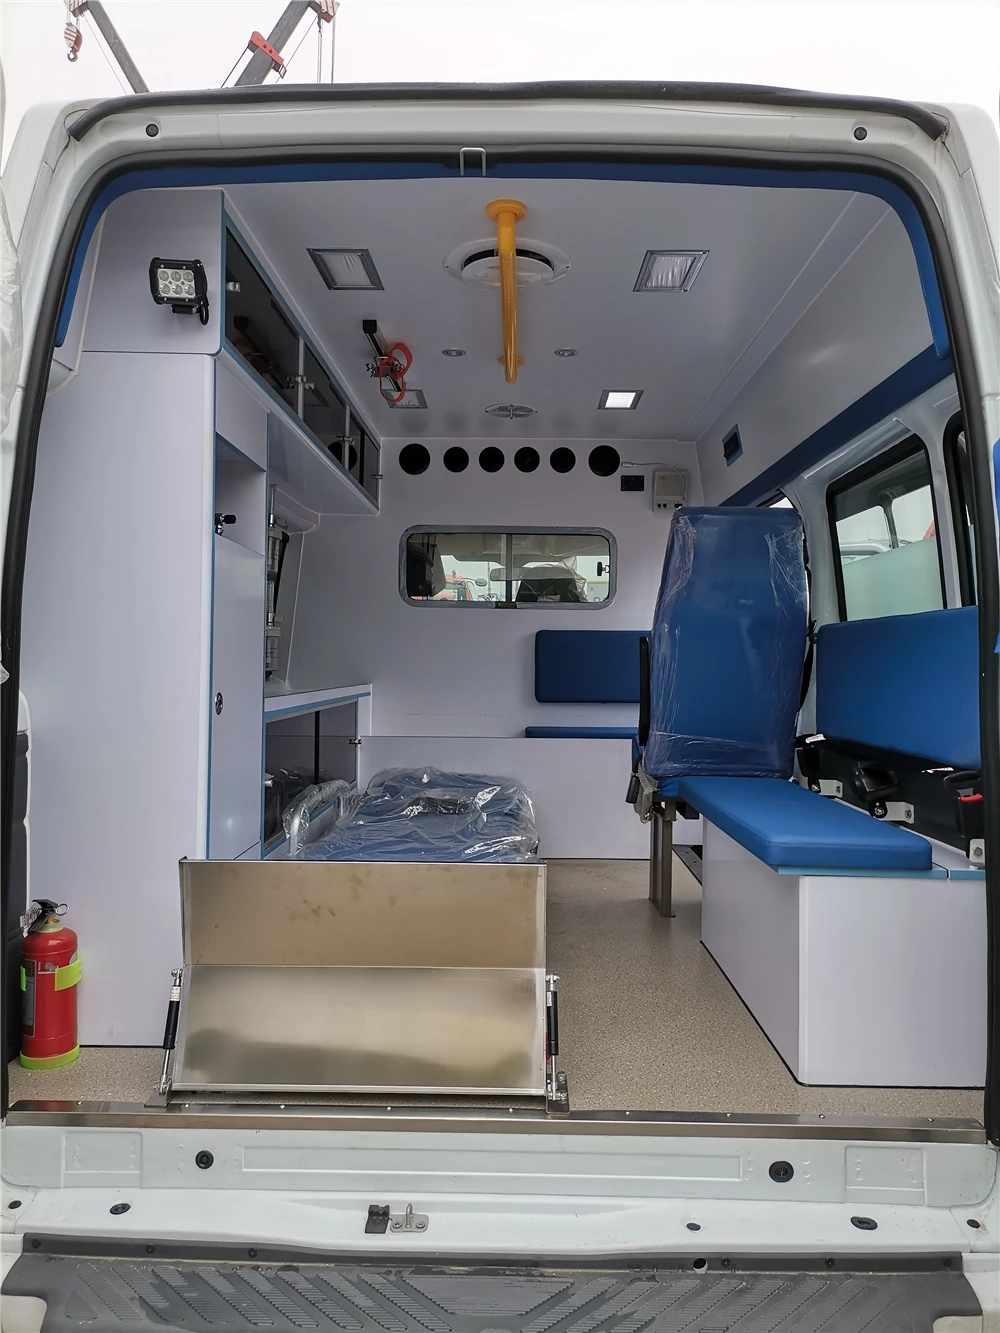 Hot quality dongfeng ward ambulance price fully automatic ambulance on sale